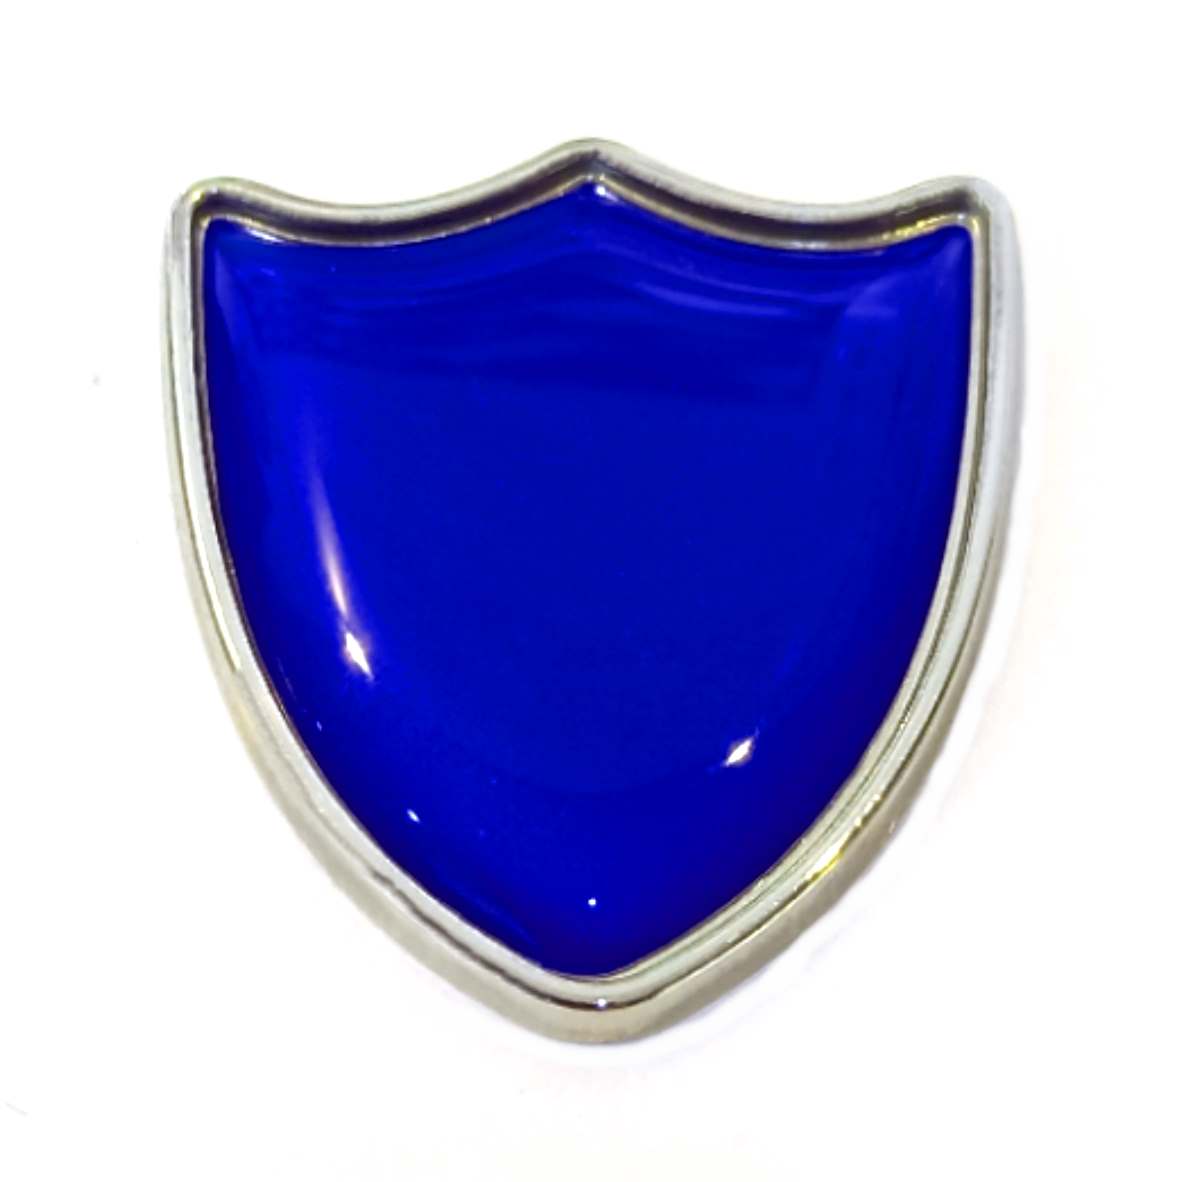 Deep Violet shield badge